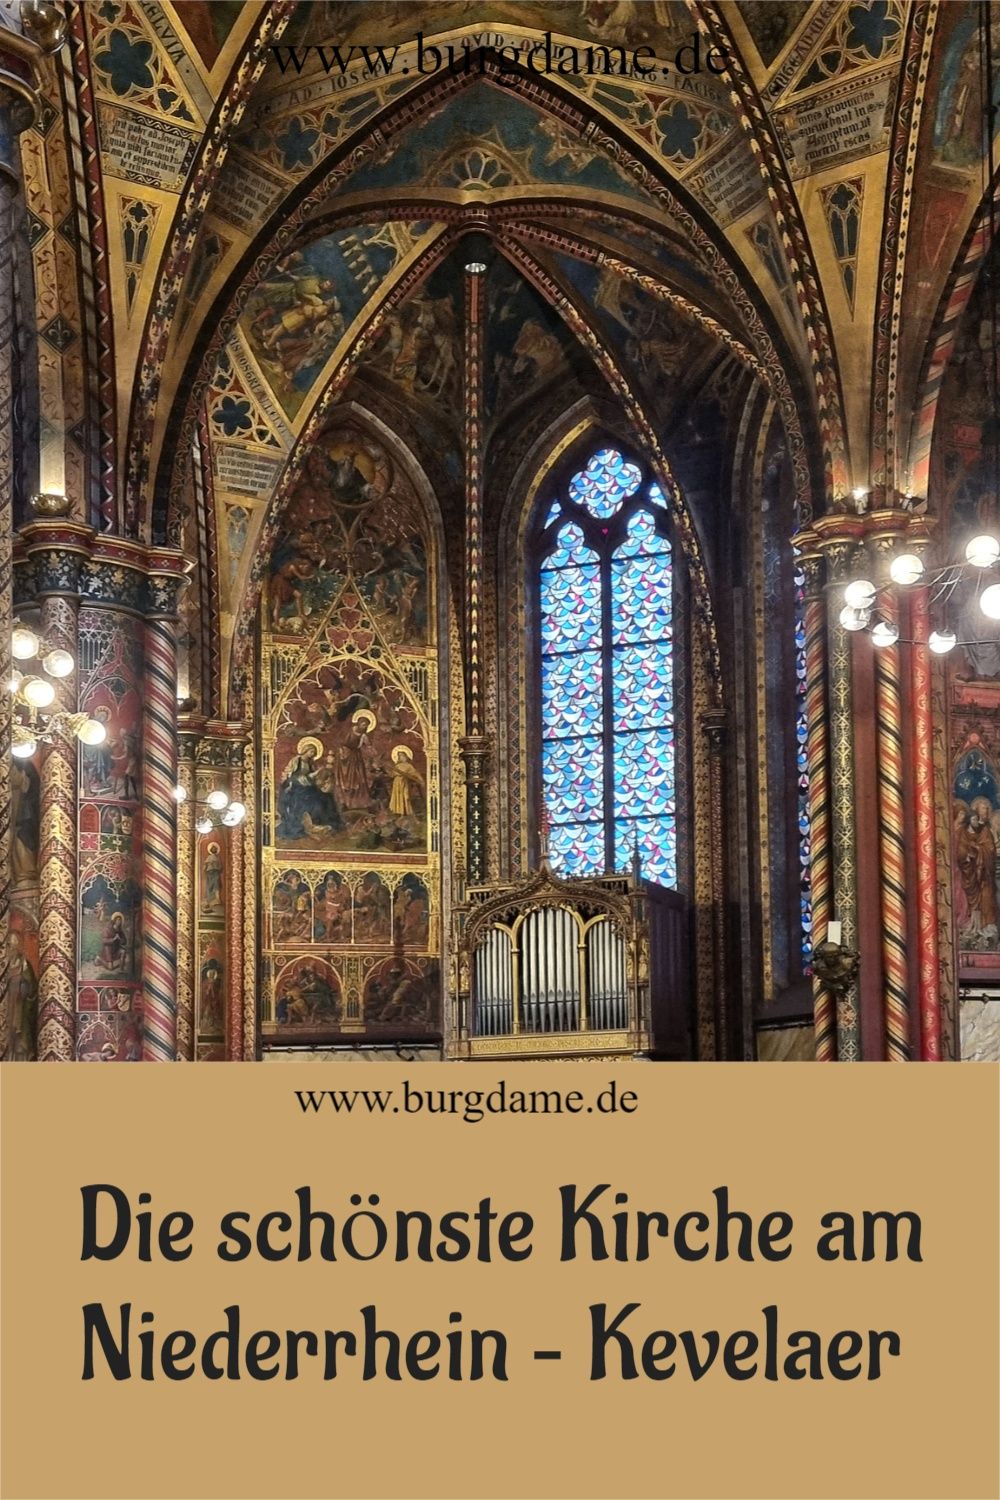 Die schönste Kirche am Mittelrhein ist in Kevelaer